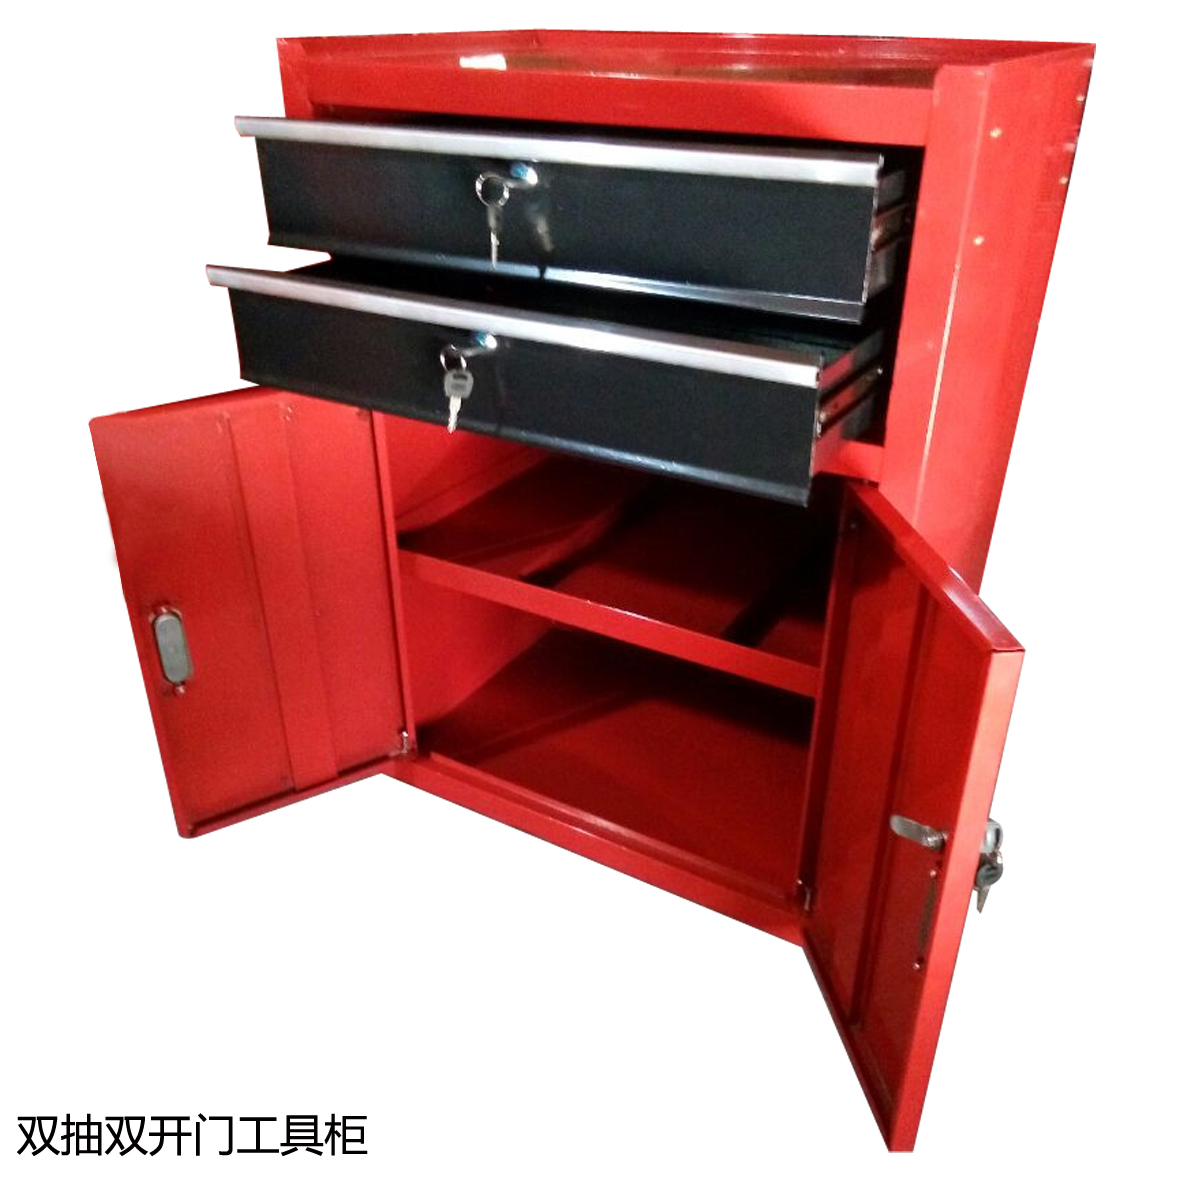 青岛工具橱价格 冷轧板工具柜图片 可用于仓库存放 工具整理